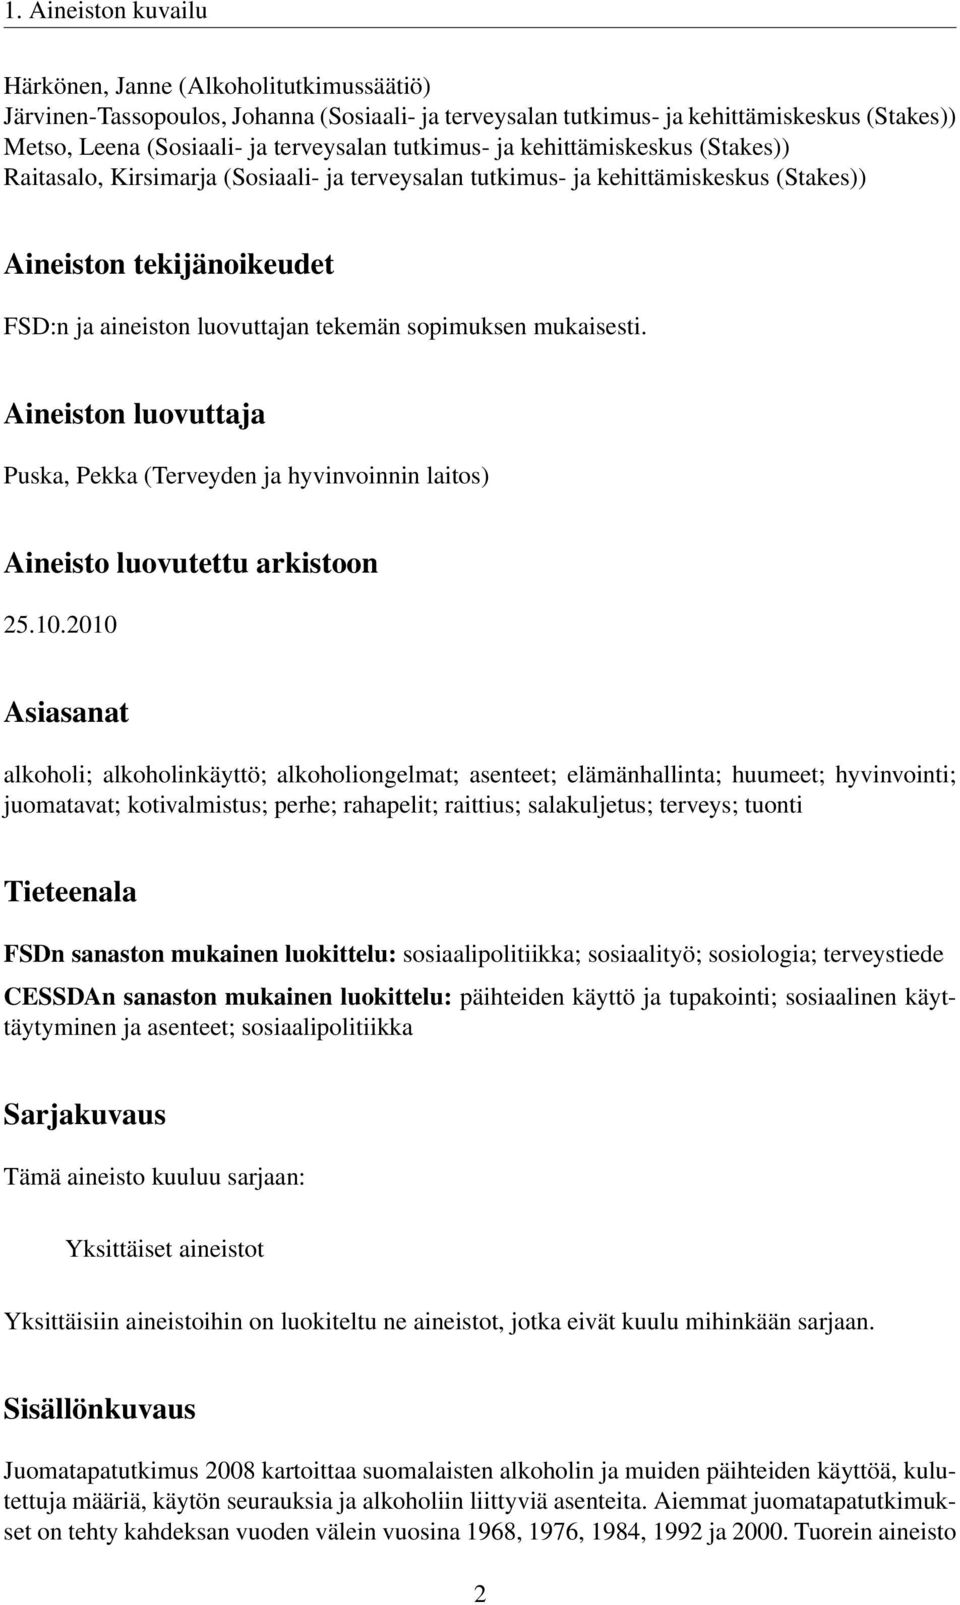 sopimuksen mukaisesti. Aineiston luovuttaja Puska, Pekka (Terveyden ja hyvinvoinnin laitos) Aineisto luovutettu arkistoon 25.10.